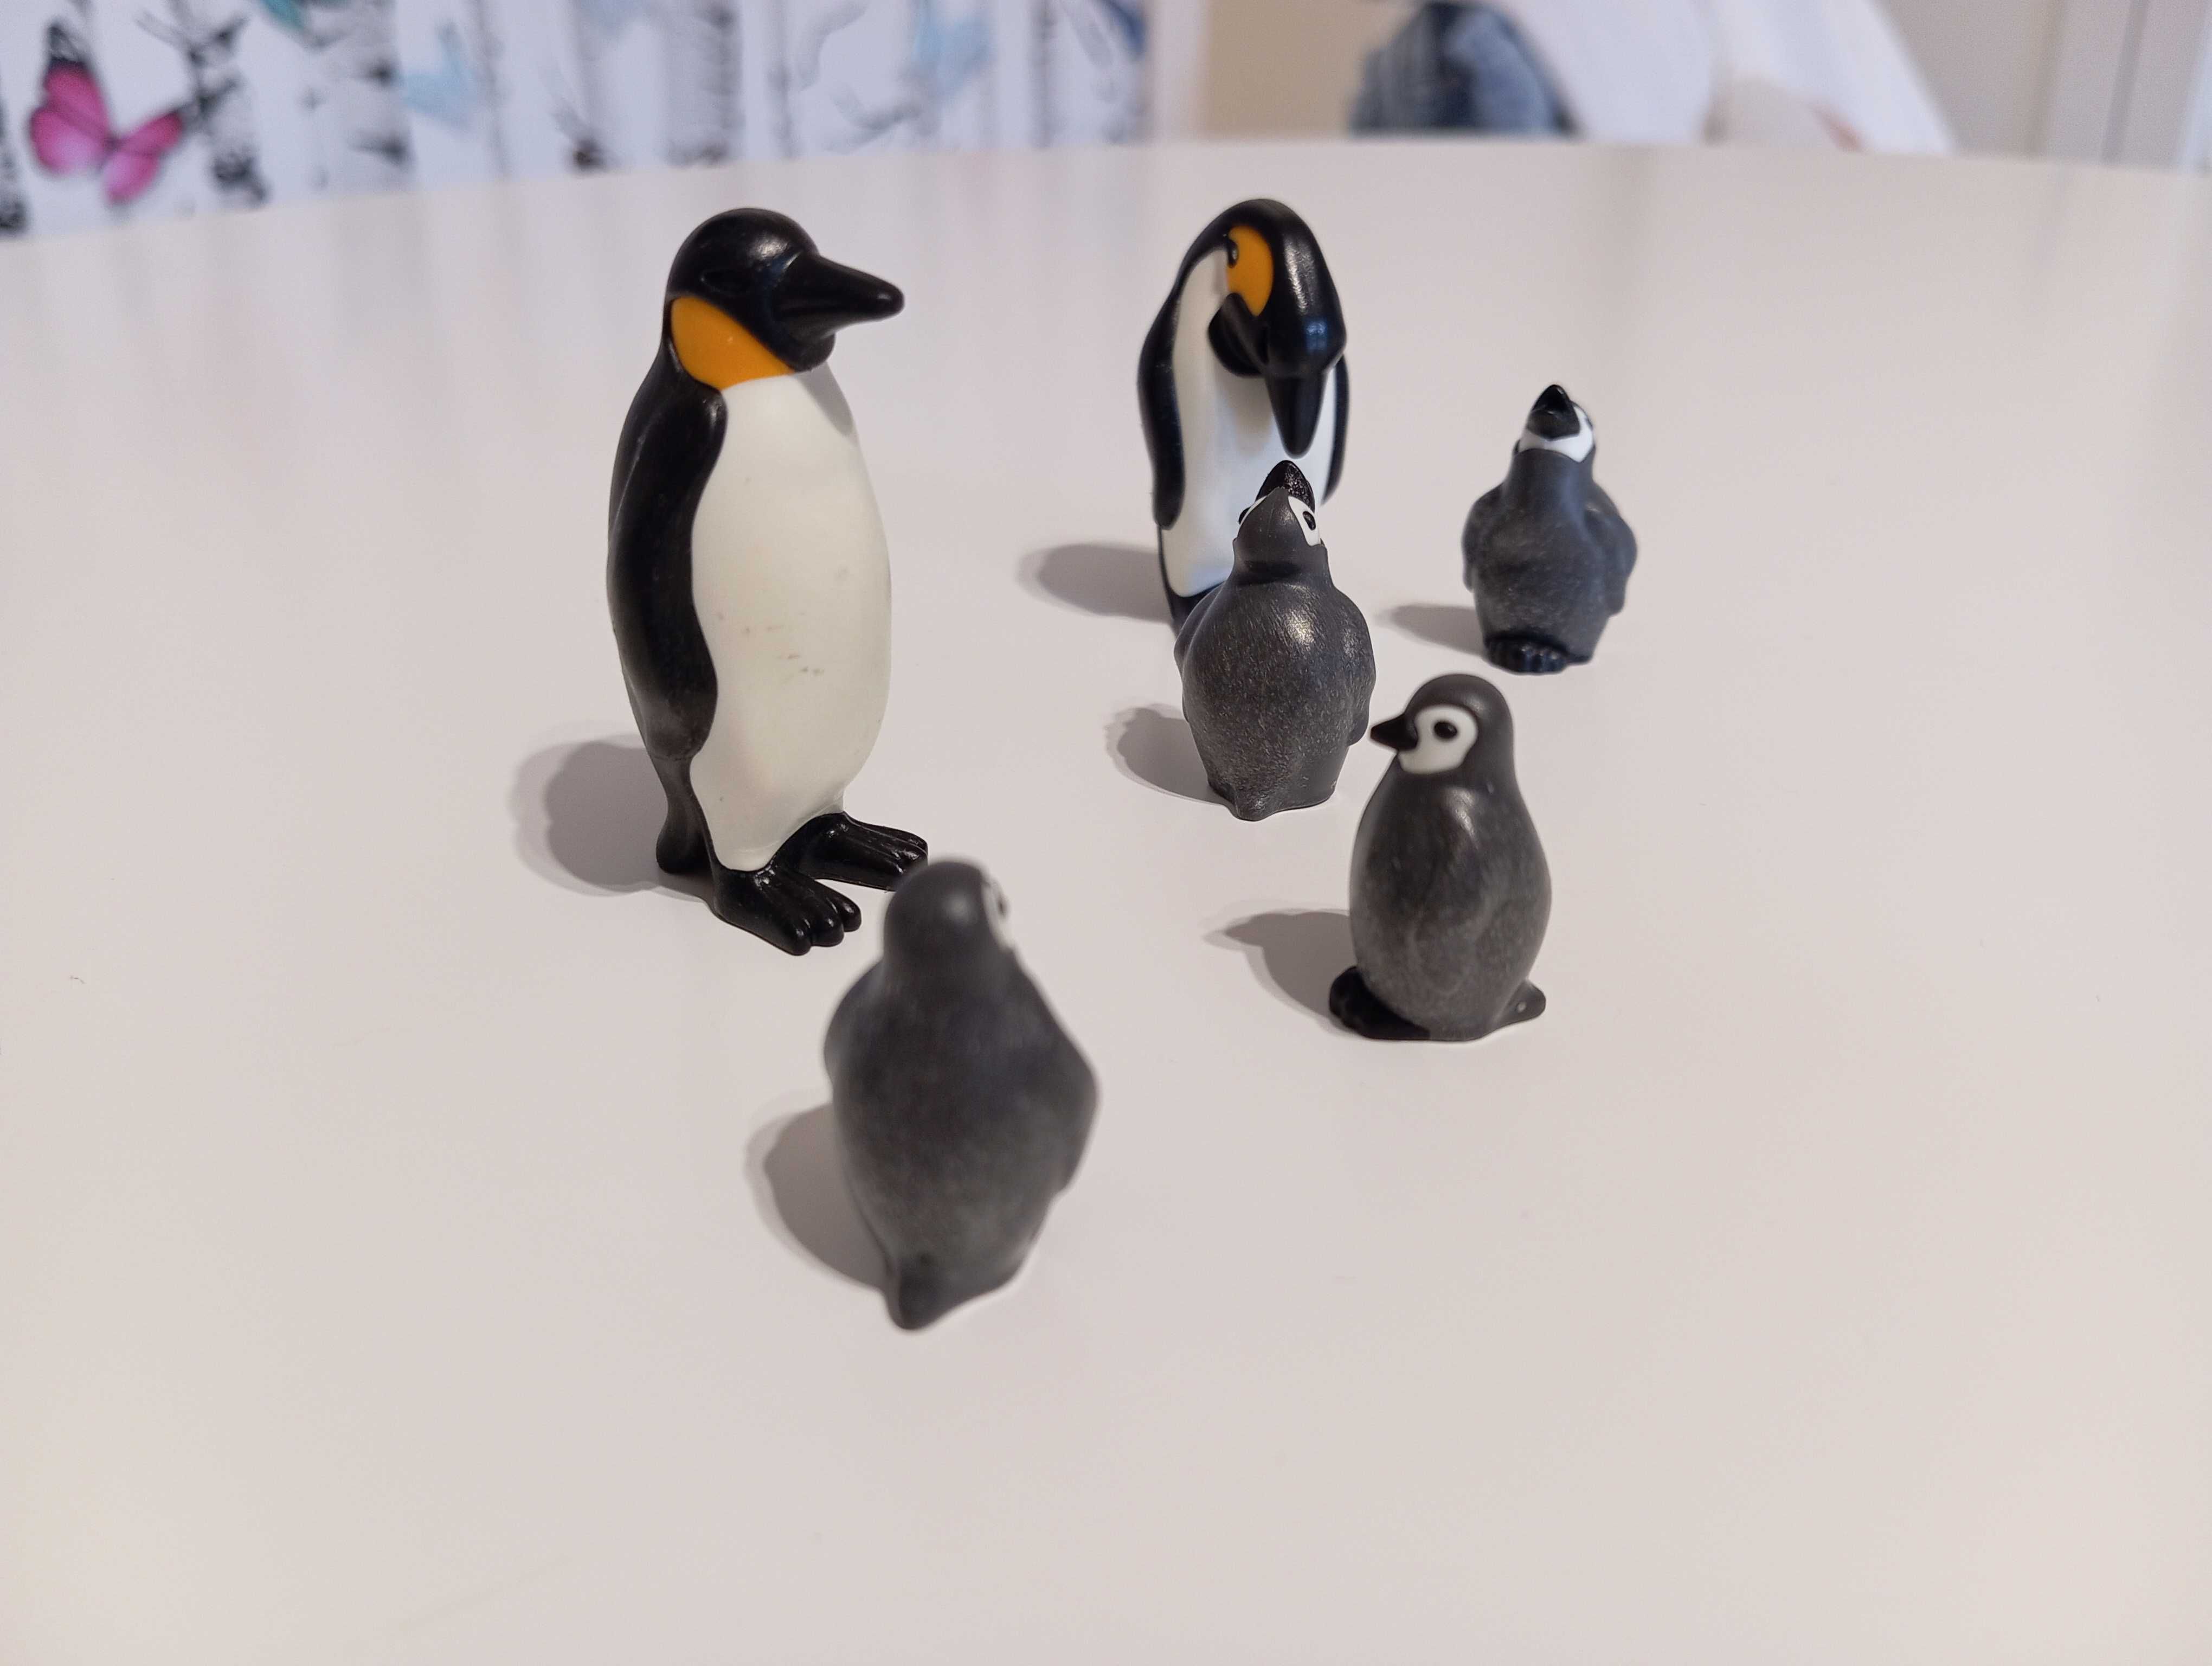 Zestaw playmobil Rodzina pingwiny, stan jak nowy